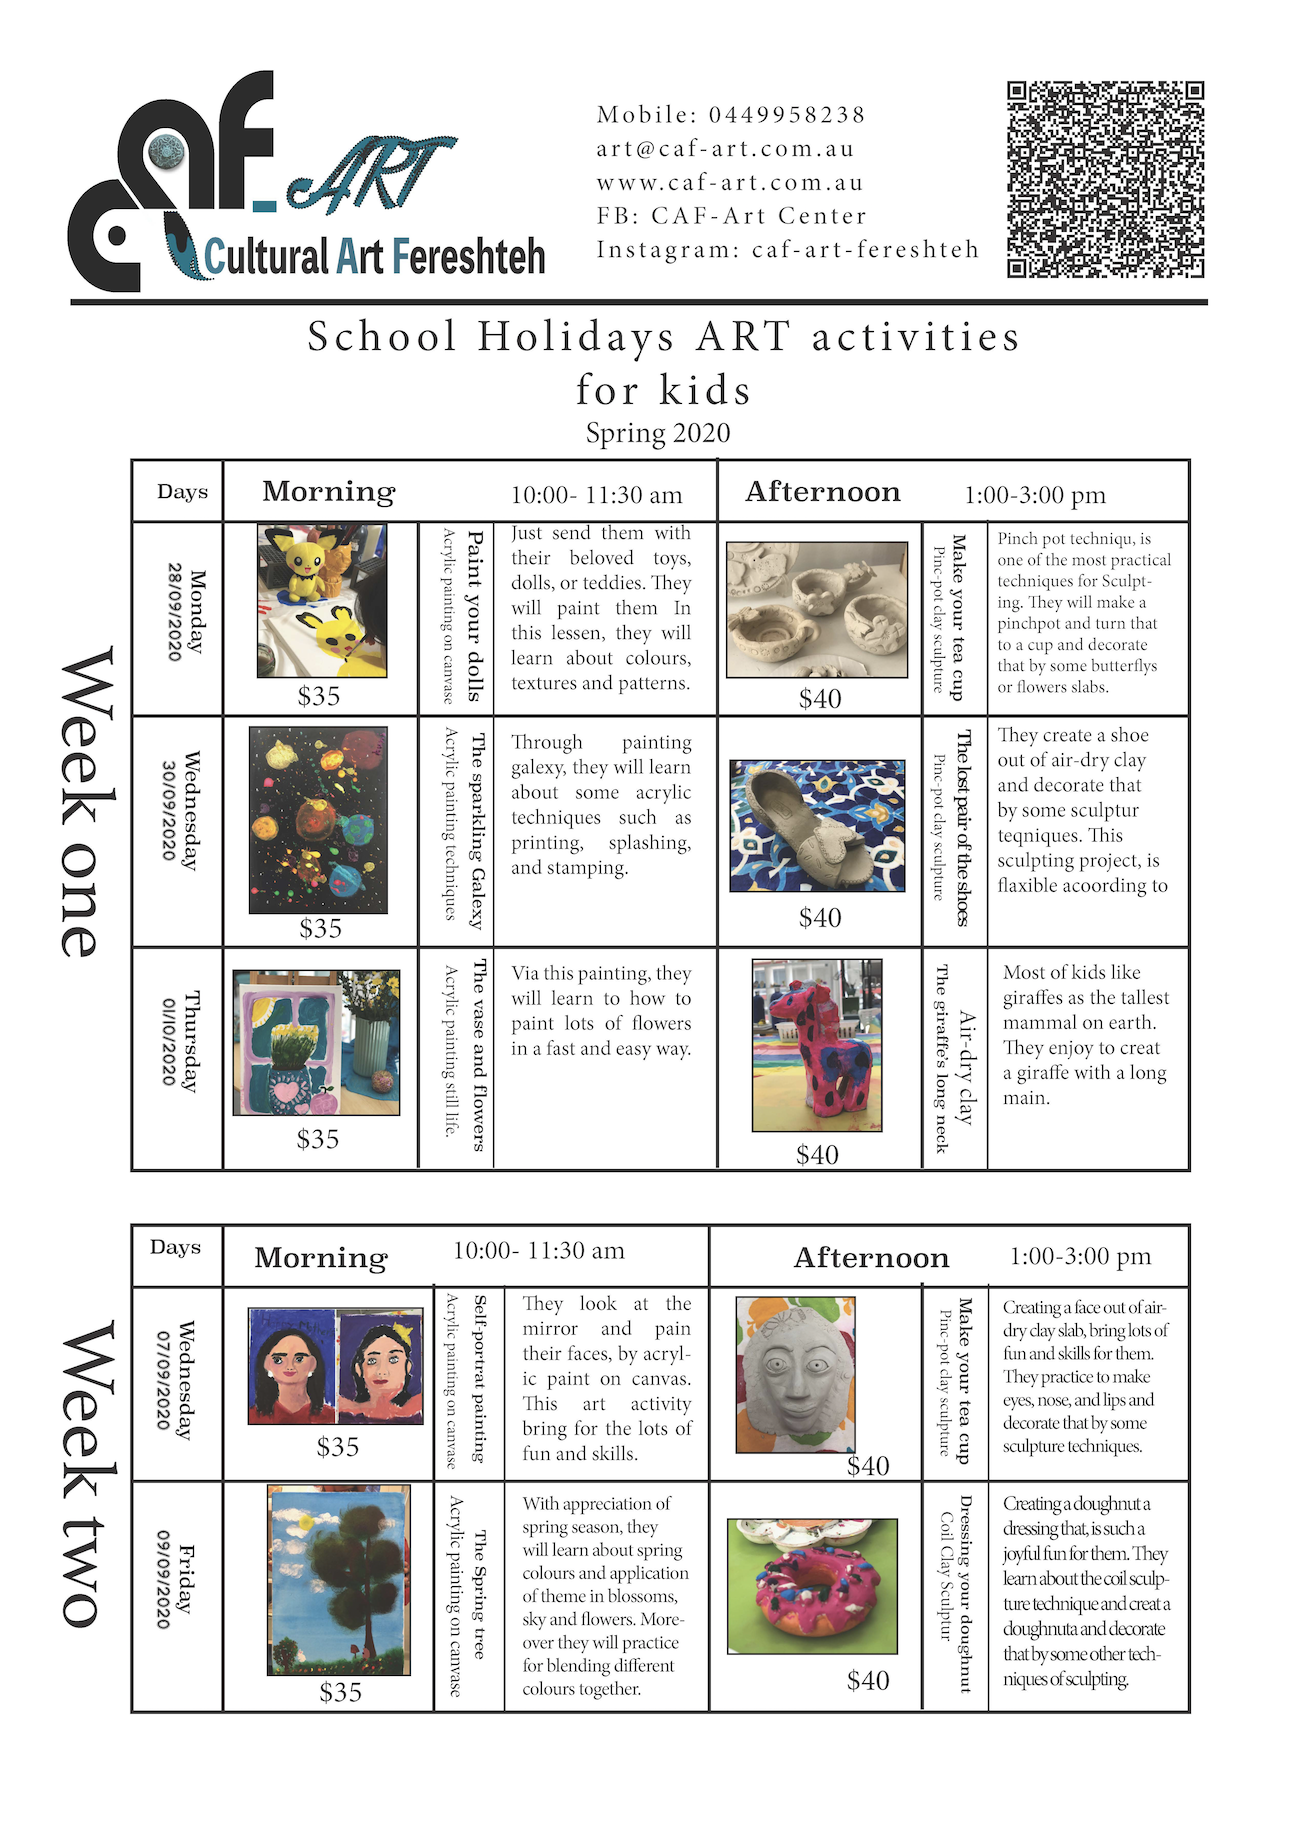 School Holiday ART activities, 2020